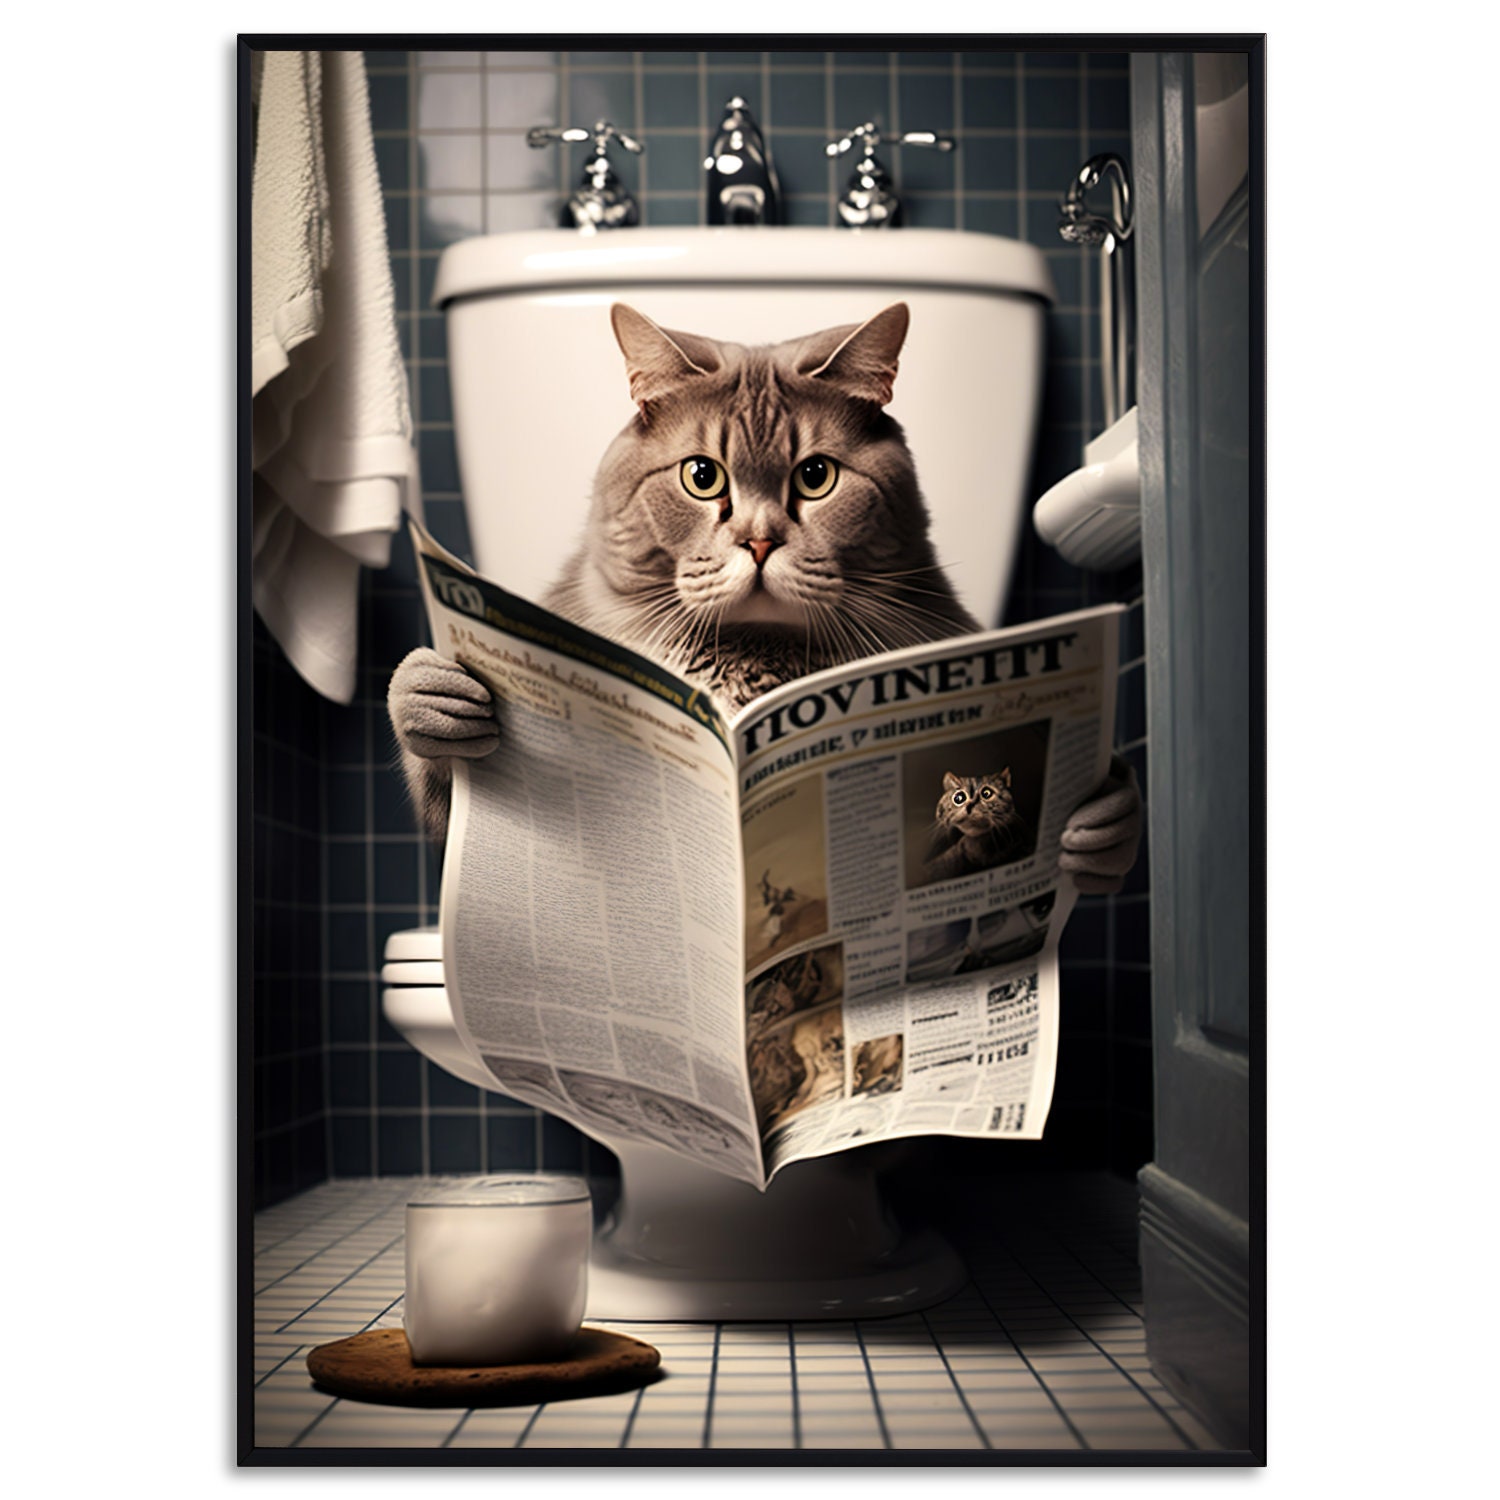 Lustige Bilder Tiere lesen Zeitung auf Toilette Poster Set - Dekomundo